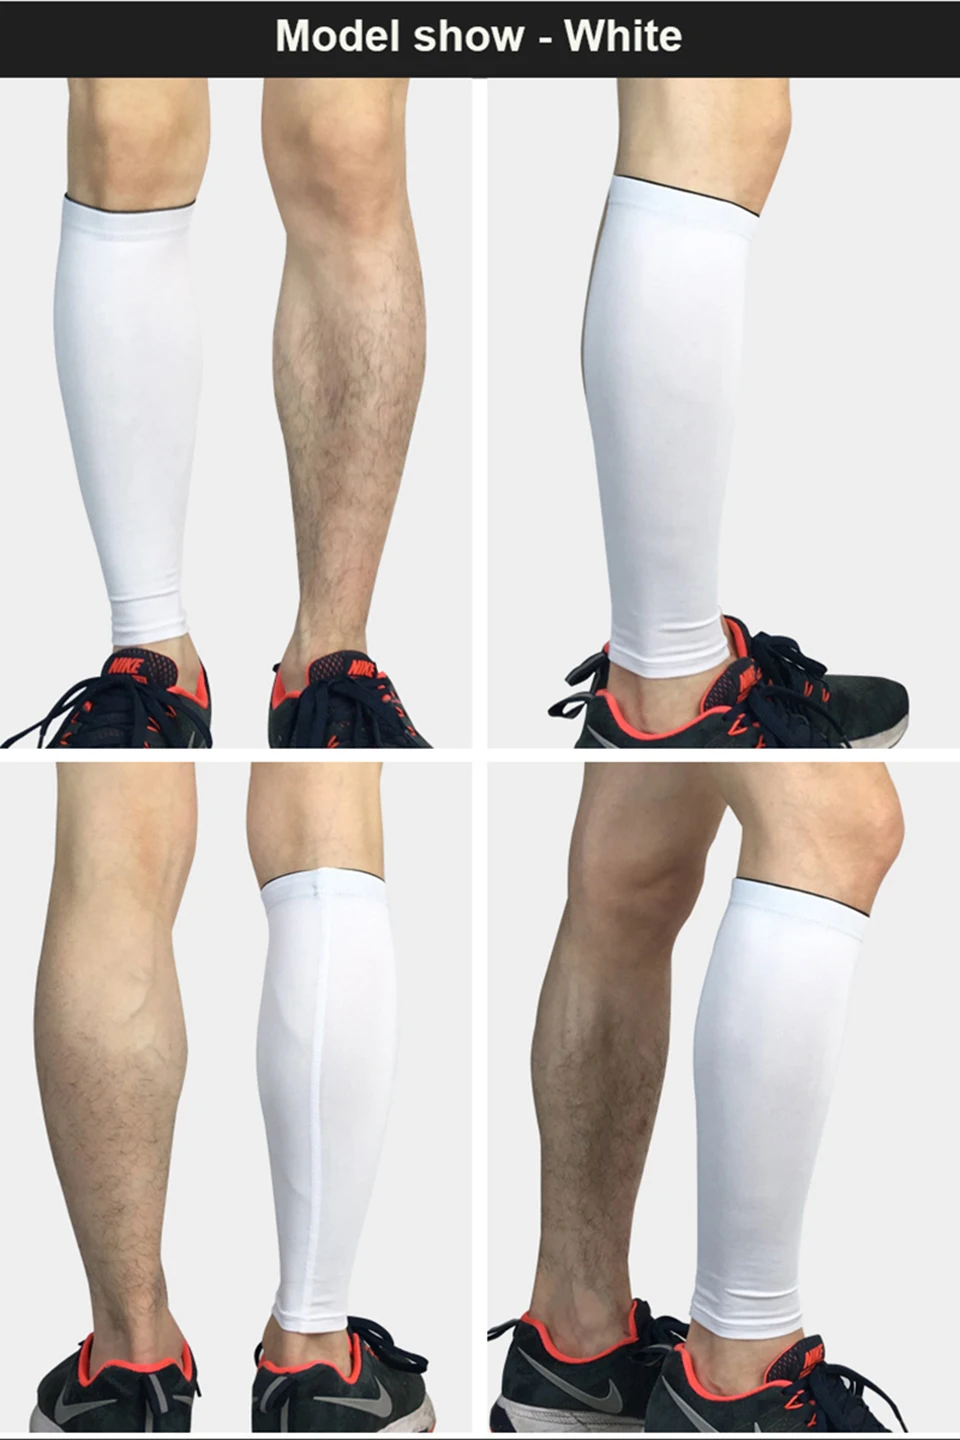 Компрессионные рукава для ног высокой для Для женщин Для мужчин Велоспорт гетры дышащий Баскетбол Бег для ног компрессионные бедра рукав